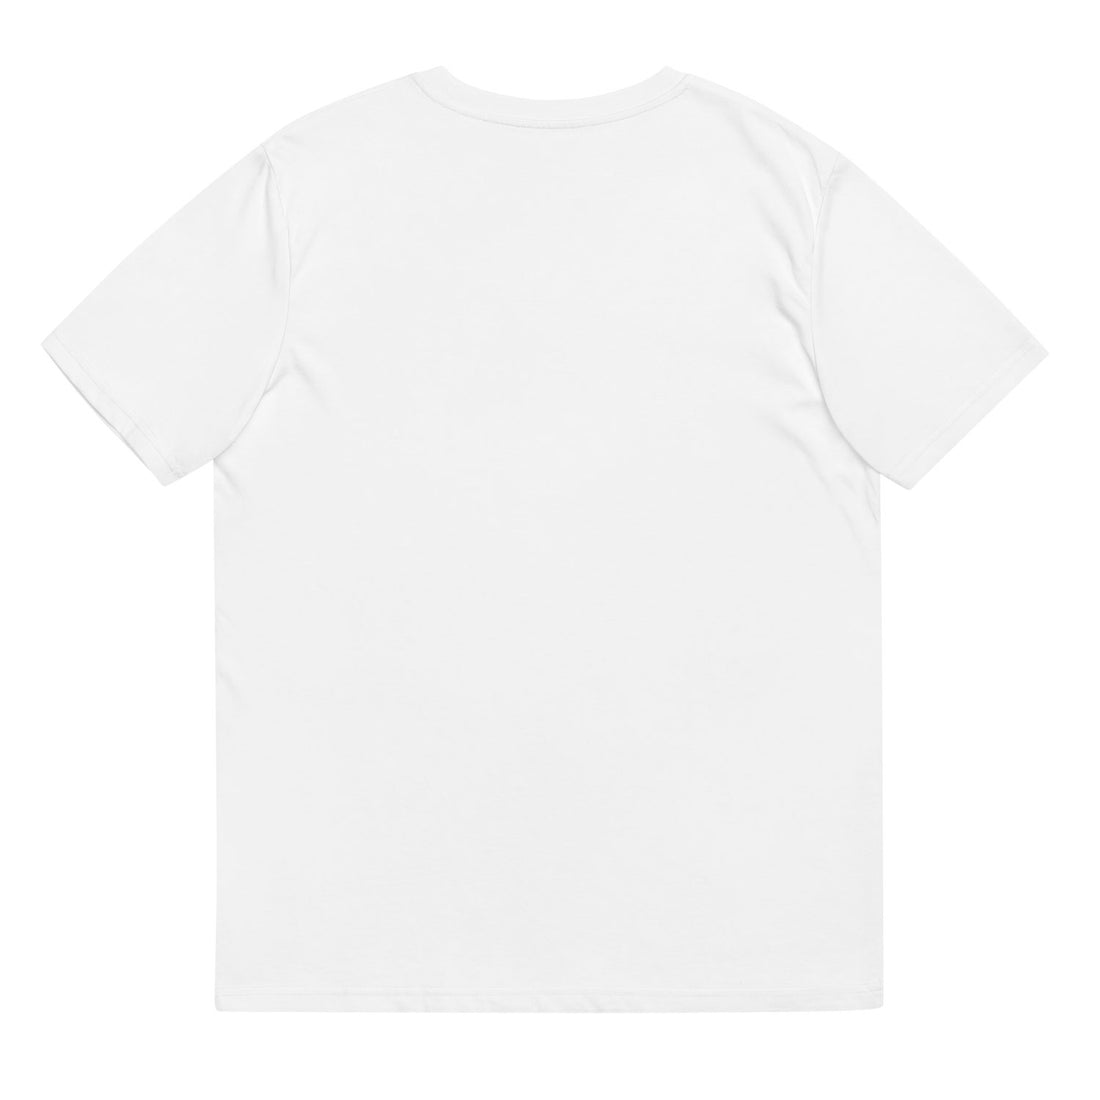 btc graphic tshirt white